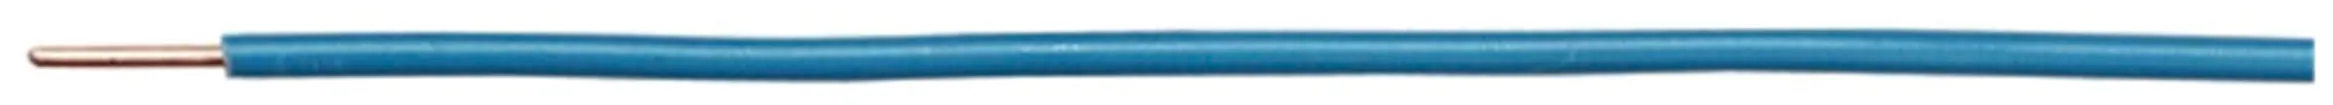 Filo N H07Z1-U senza alogeno 1.5mm² 450/750V blu chiaro Cca 